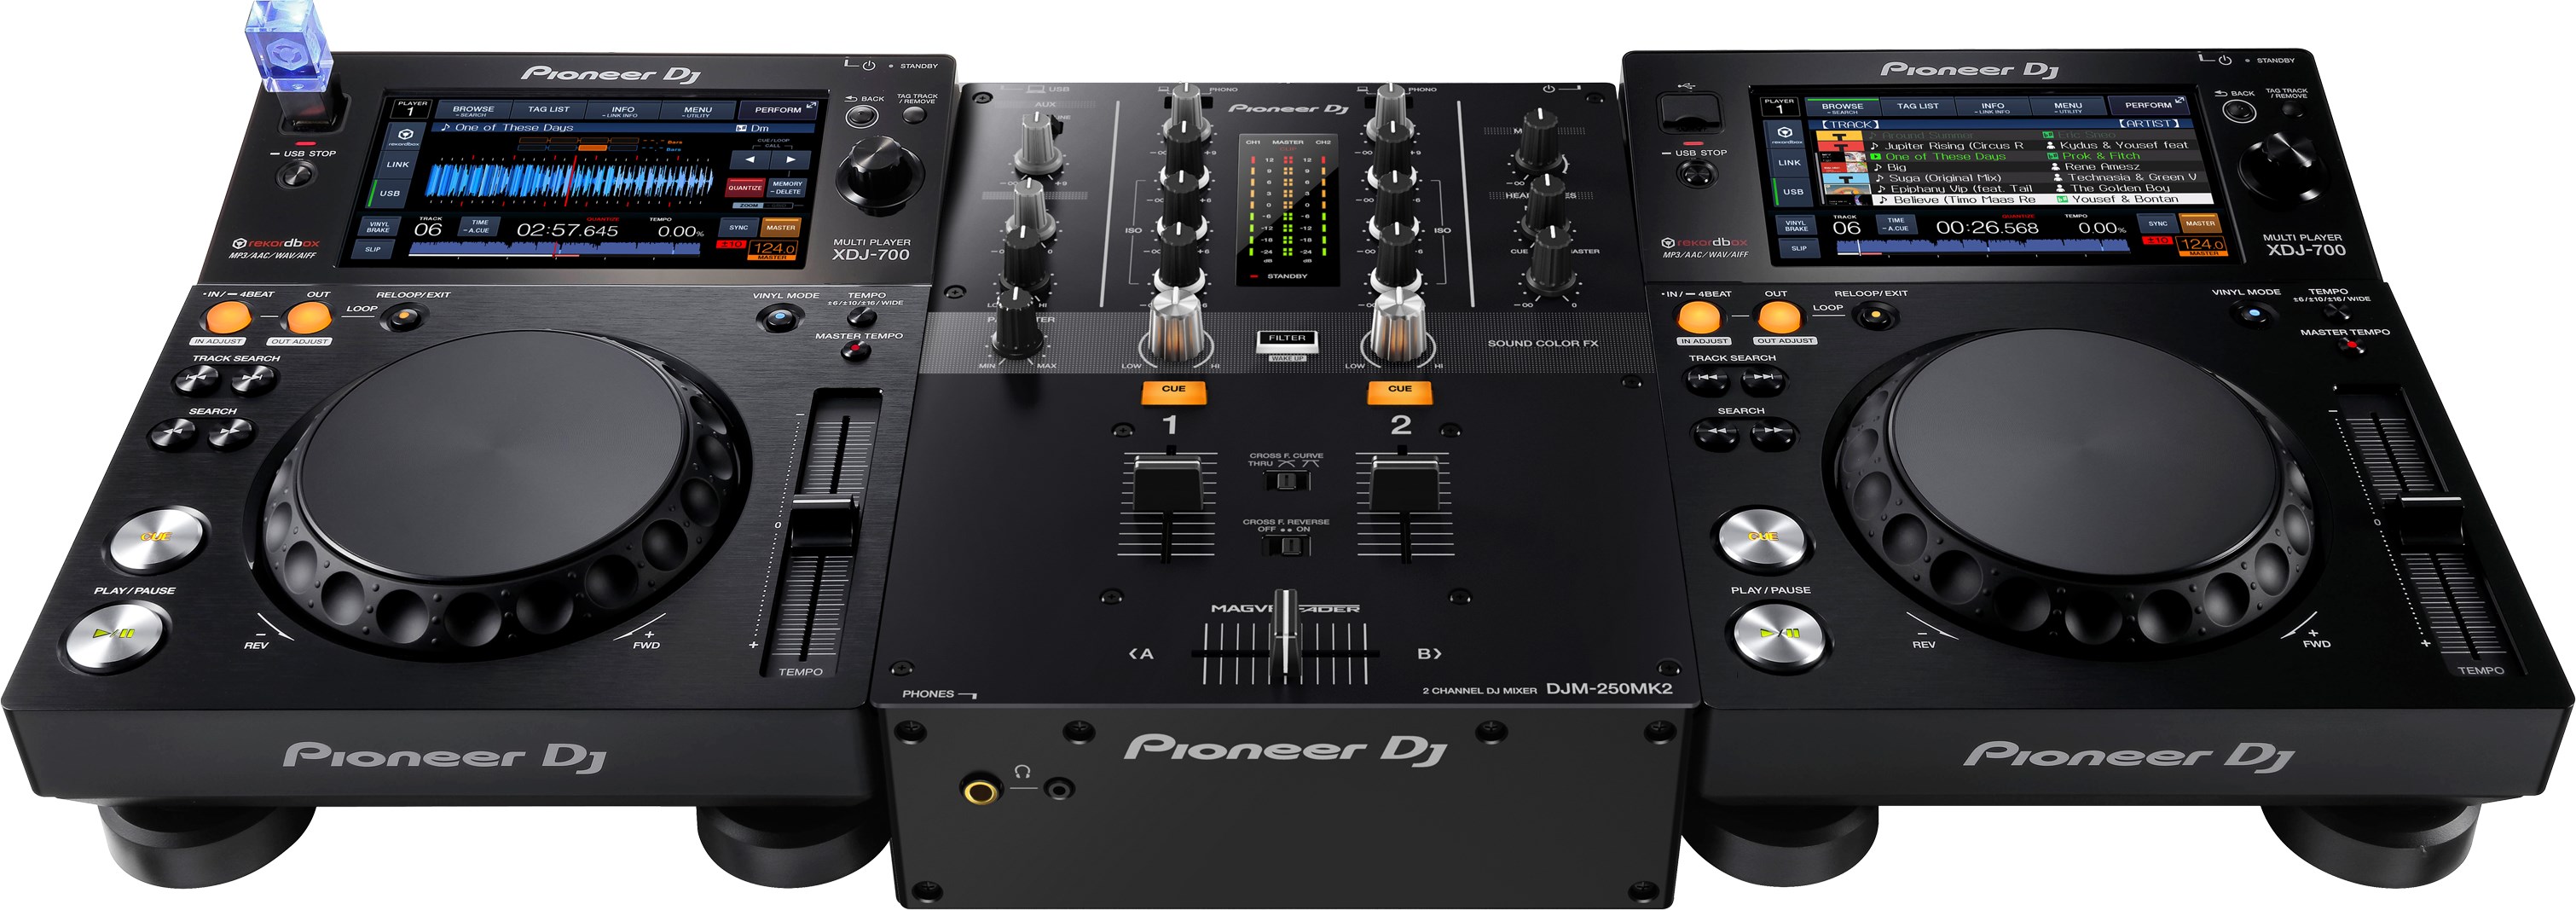 Pioneer Dj Djm-250mk2 - DJ-Mixer - Variation 3